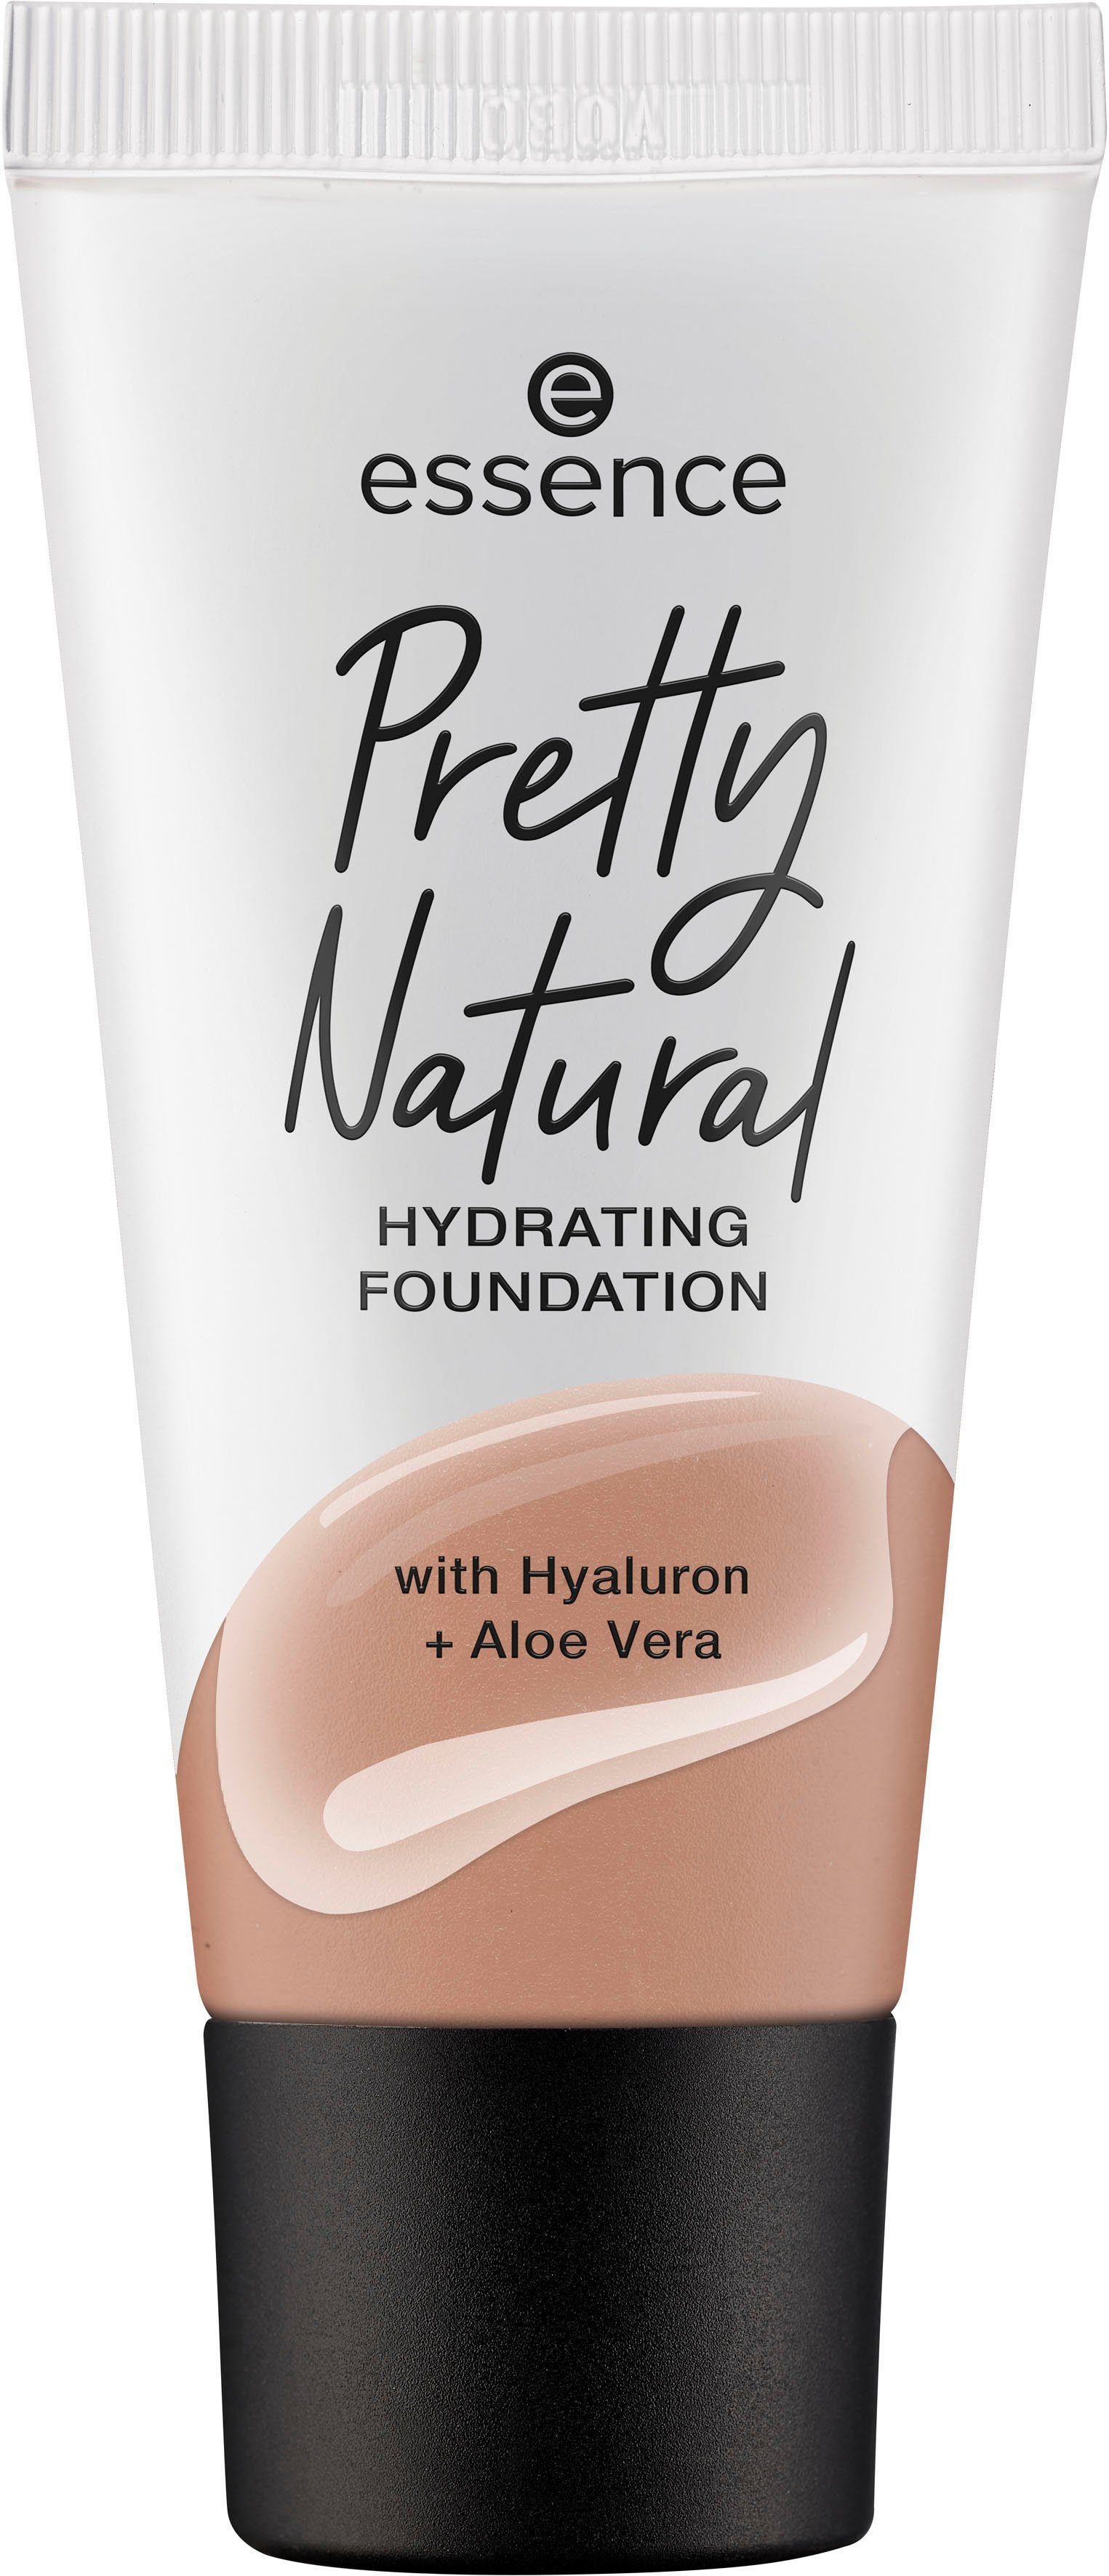 Essence 3-tlg. HYDRATING, Pretty Warm Natural Nutmeg Foundation